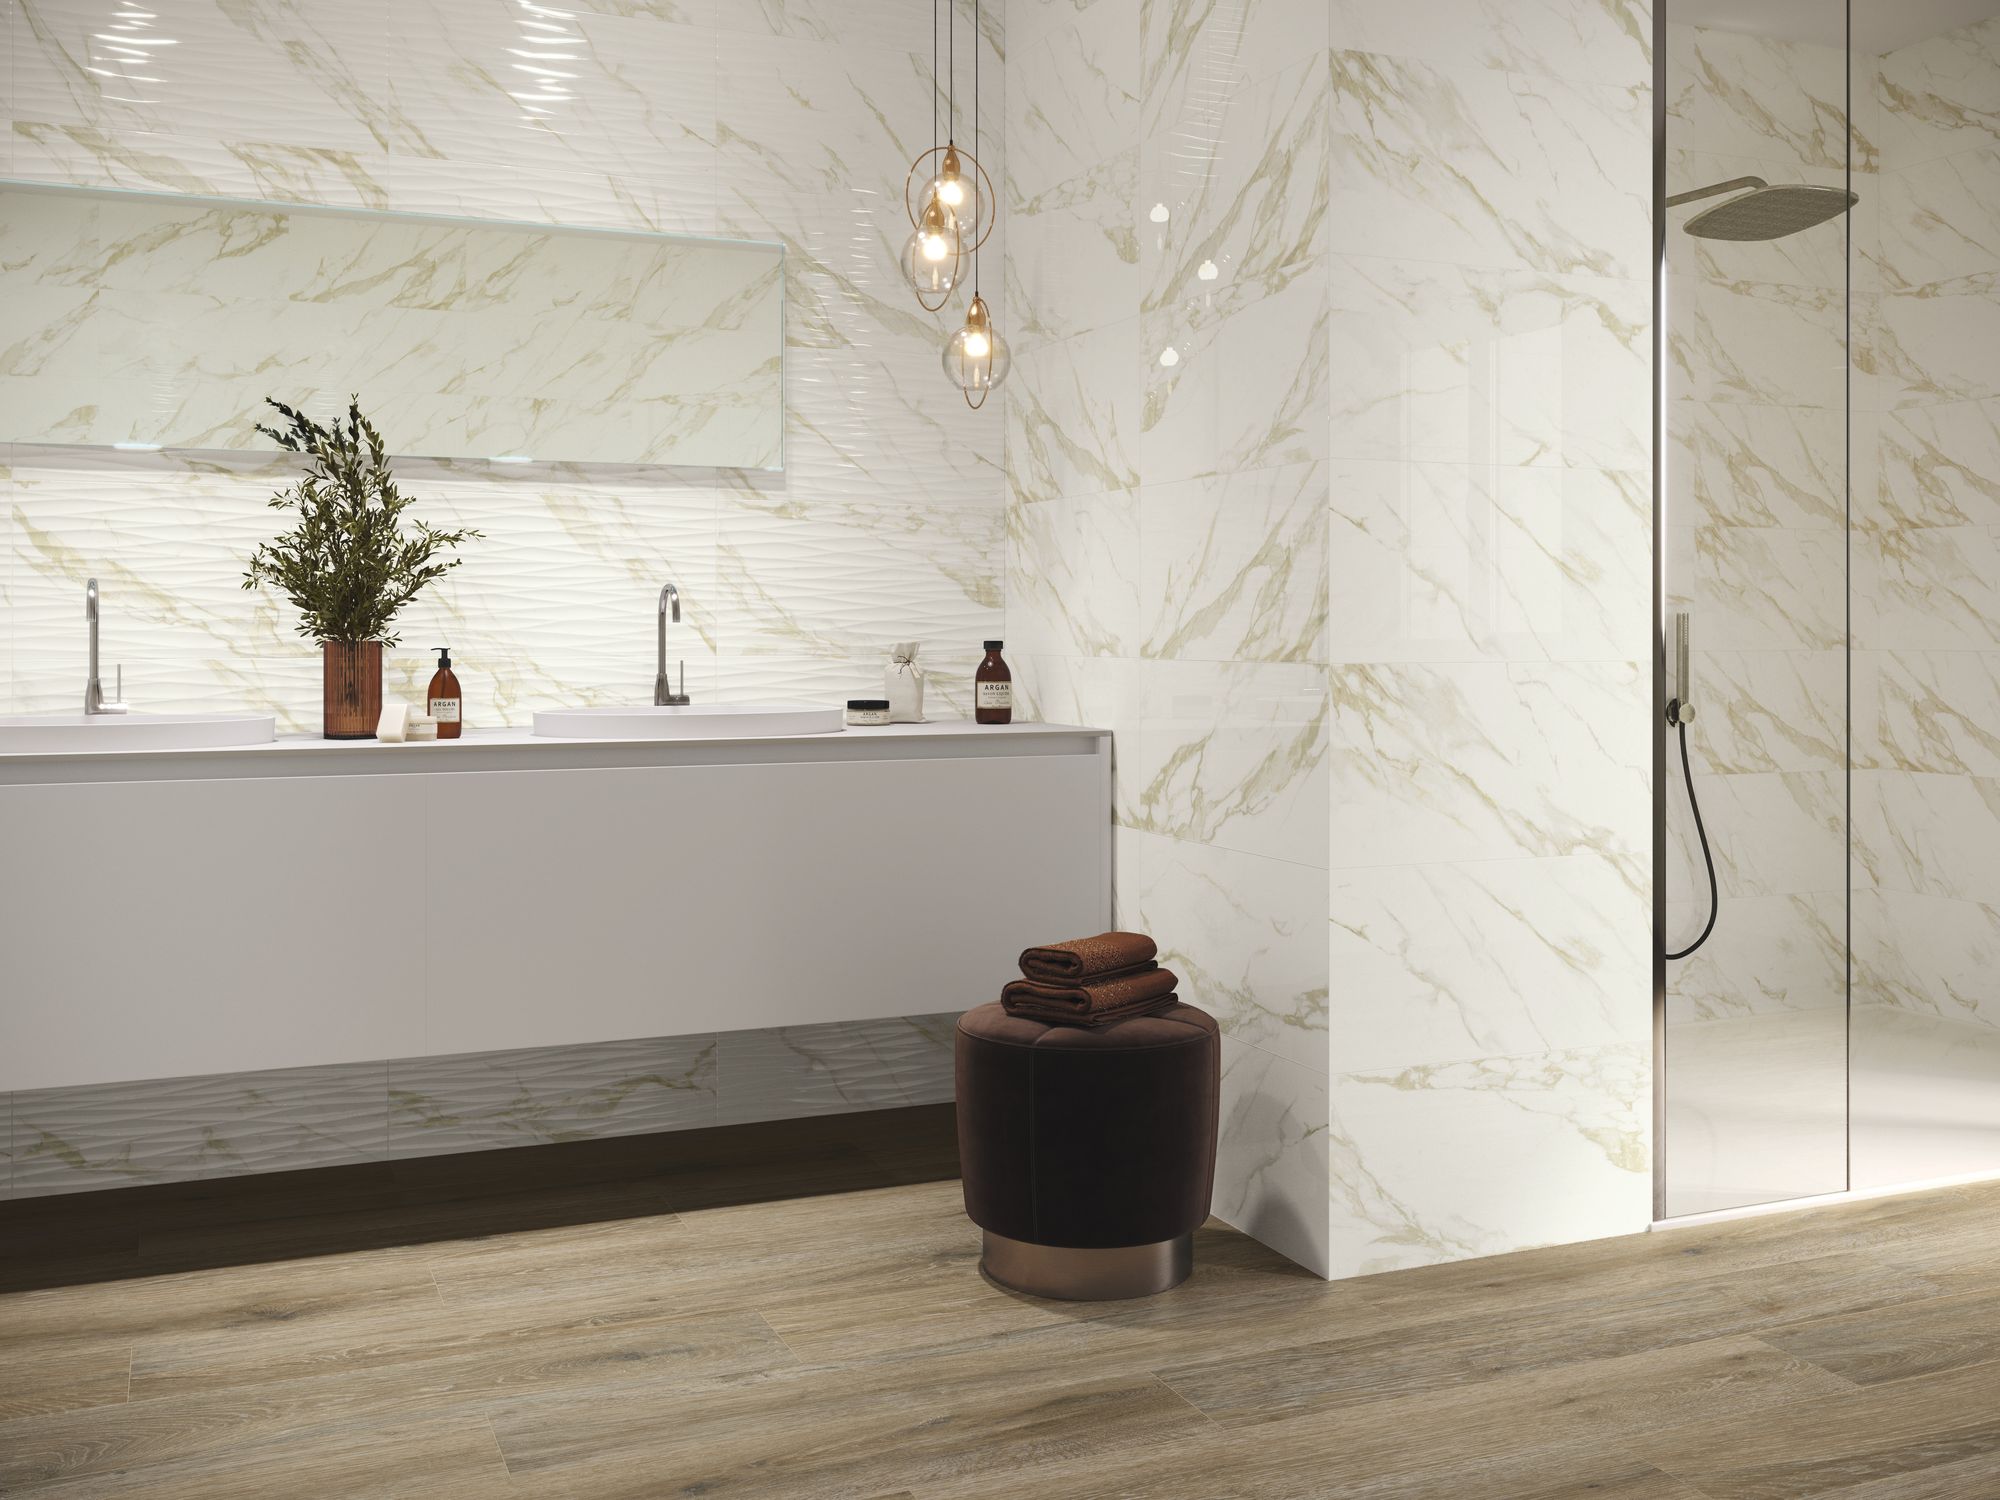 Jasna łazienka ze ścianą wyłożoną płytkami imitującymi marmur i drewnopodobną podłogą, z kabiną prysznicową, długą, białą szafką wiszącą z dwiema umywalkami, długim, poziomym lustrem, lampą wiszącą i brązową pufą